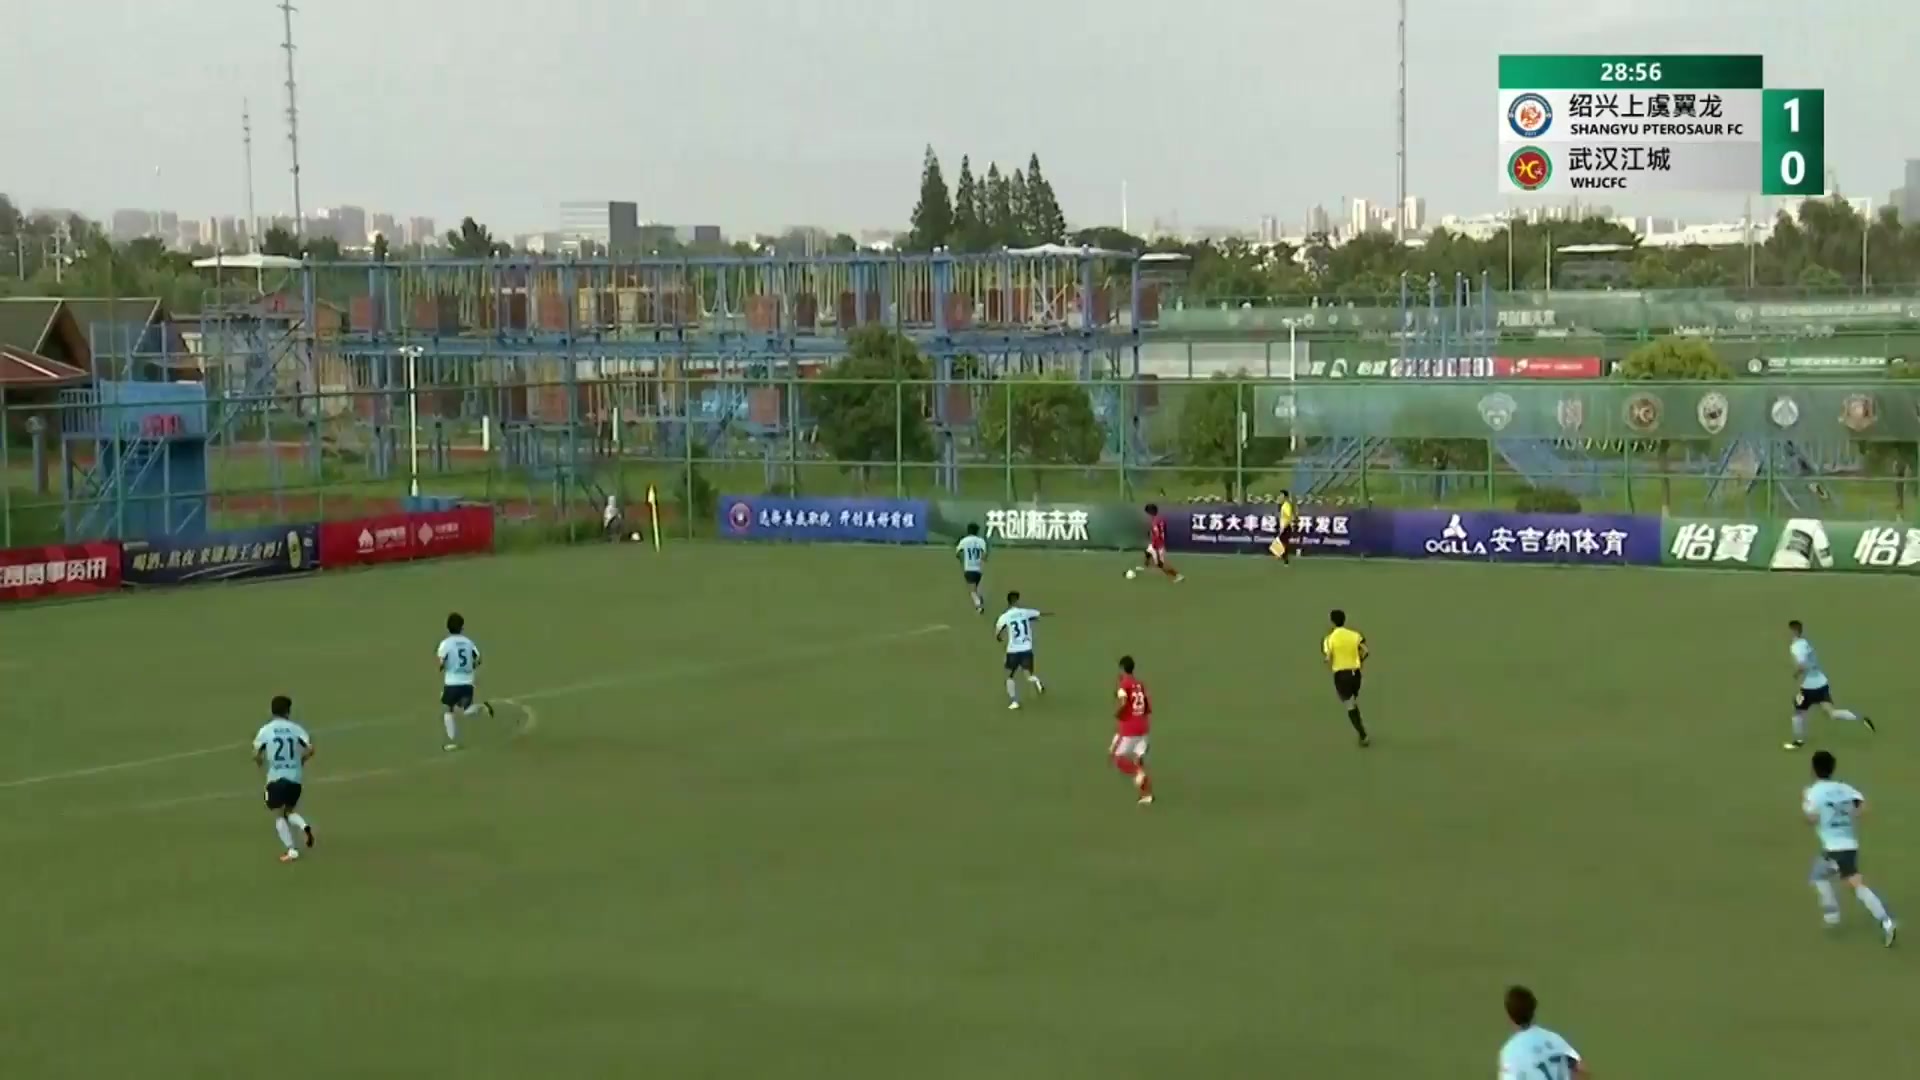 CHA D2 ShangYu Pterosaur FC Vs Wuhan JiangCheng Liu Feng Goal in 29 min, Score 1:1